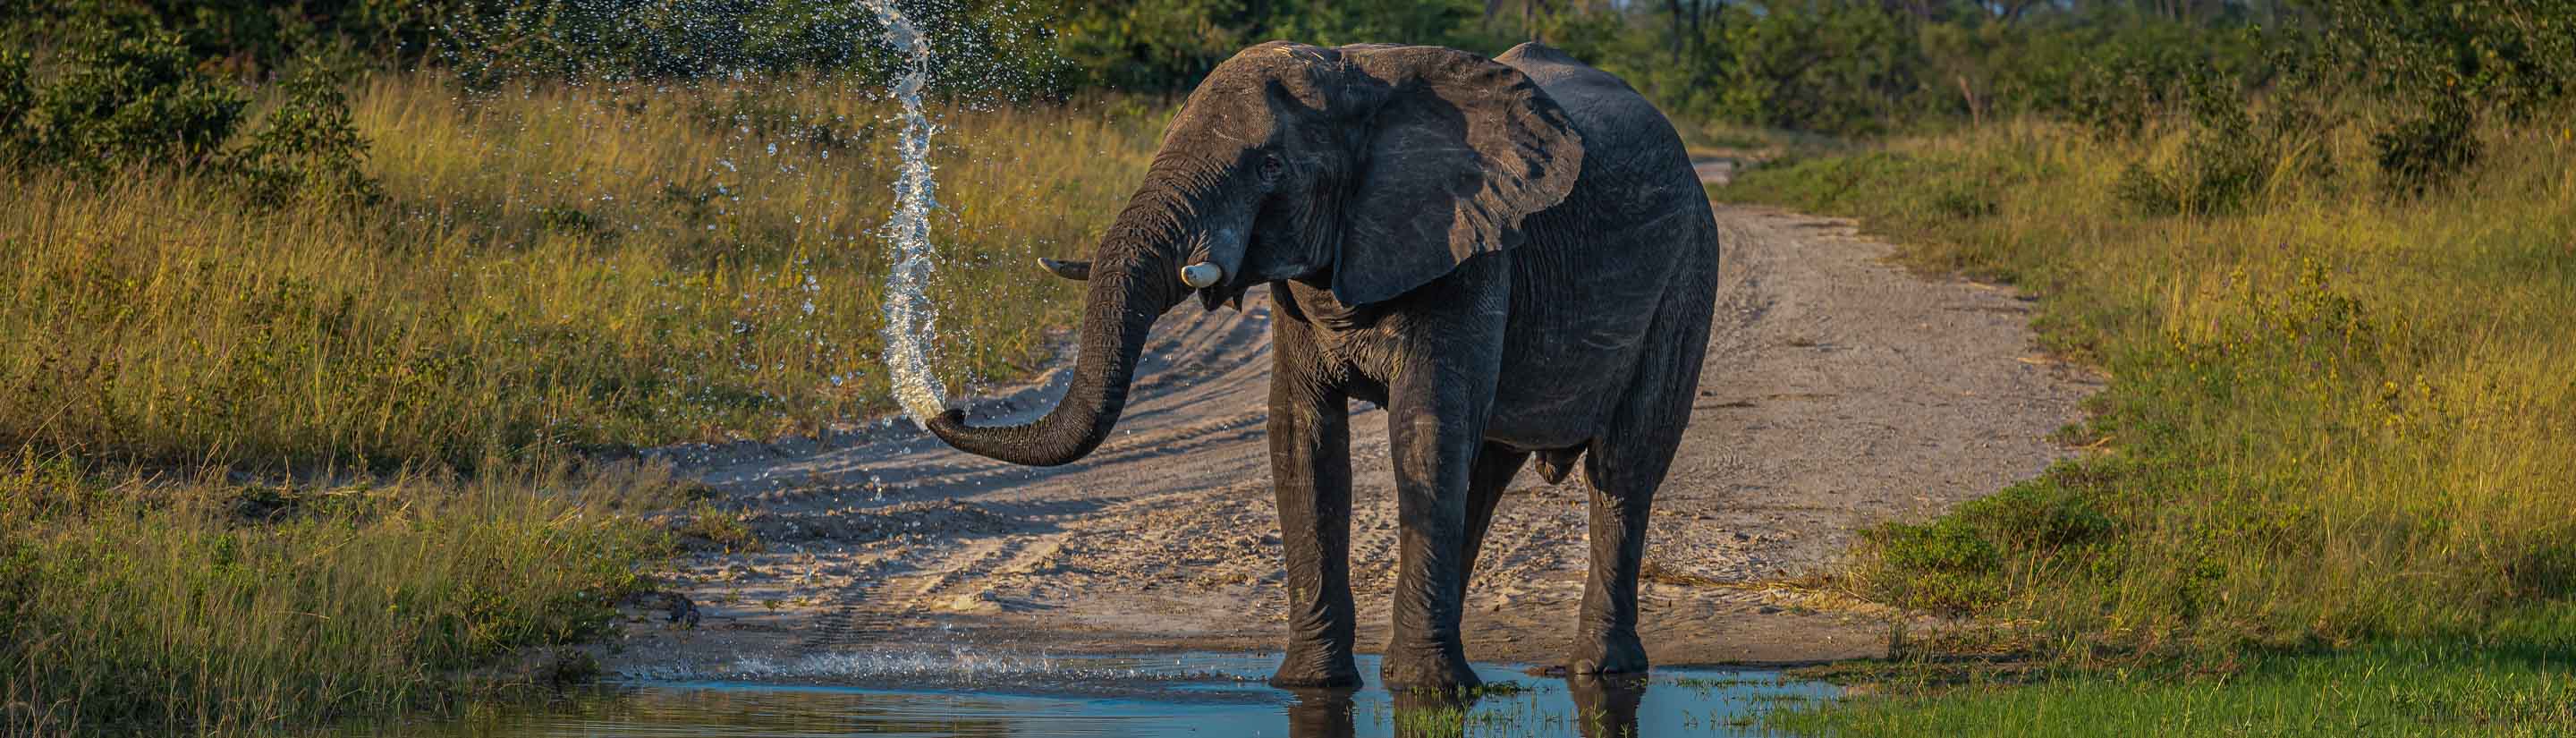 Elefantendusche Botswana Reise